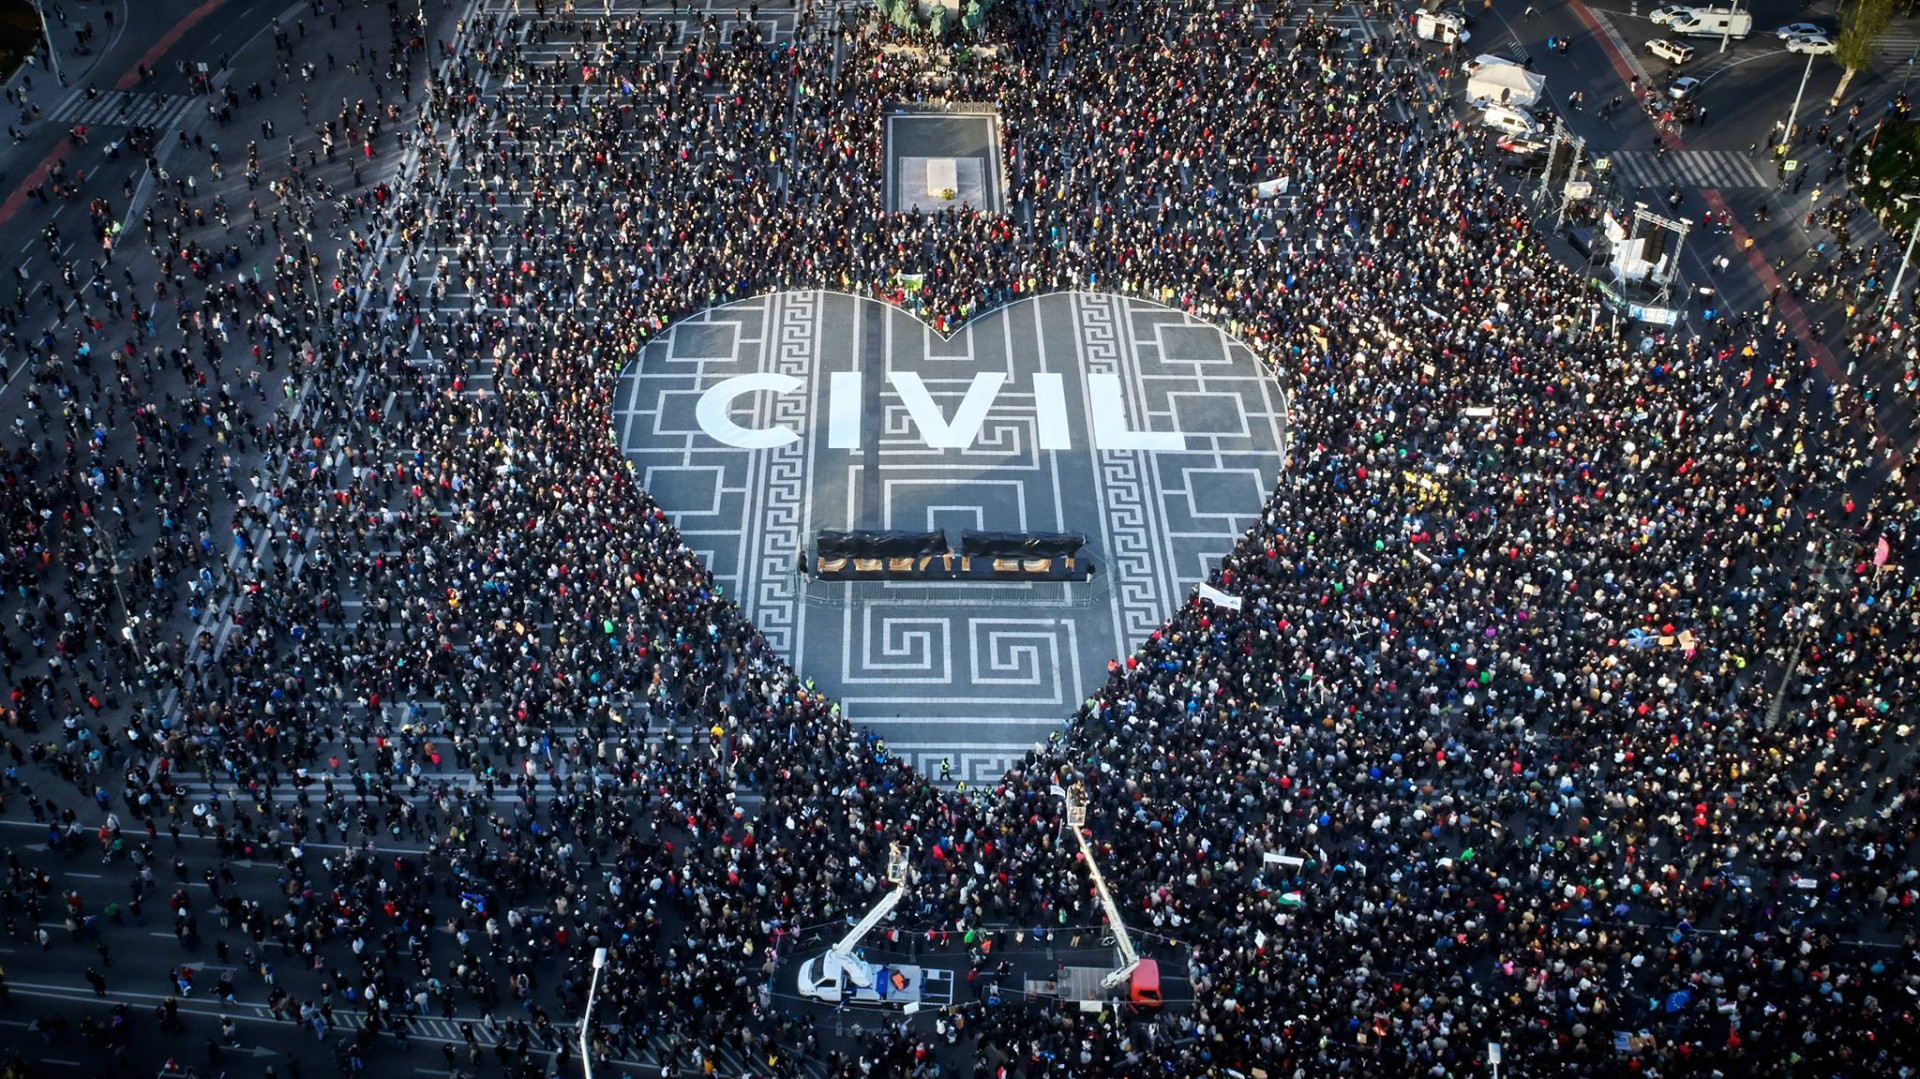 A civilek bíróságra mennek, a Fidesz örül a megbélyegző törvénynek